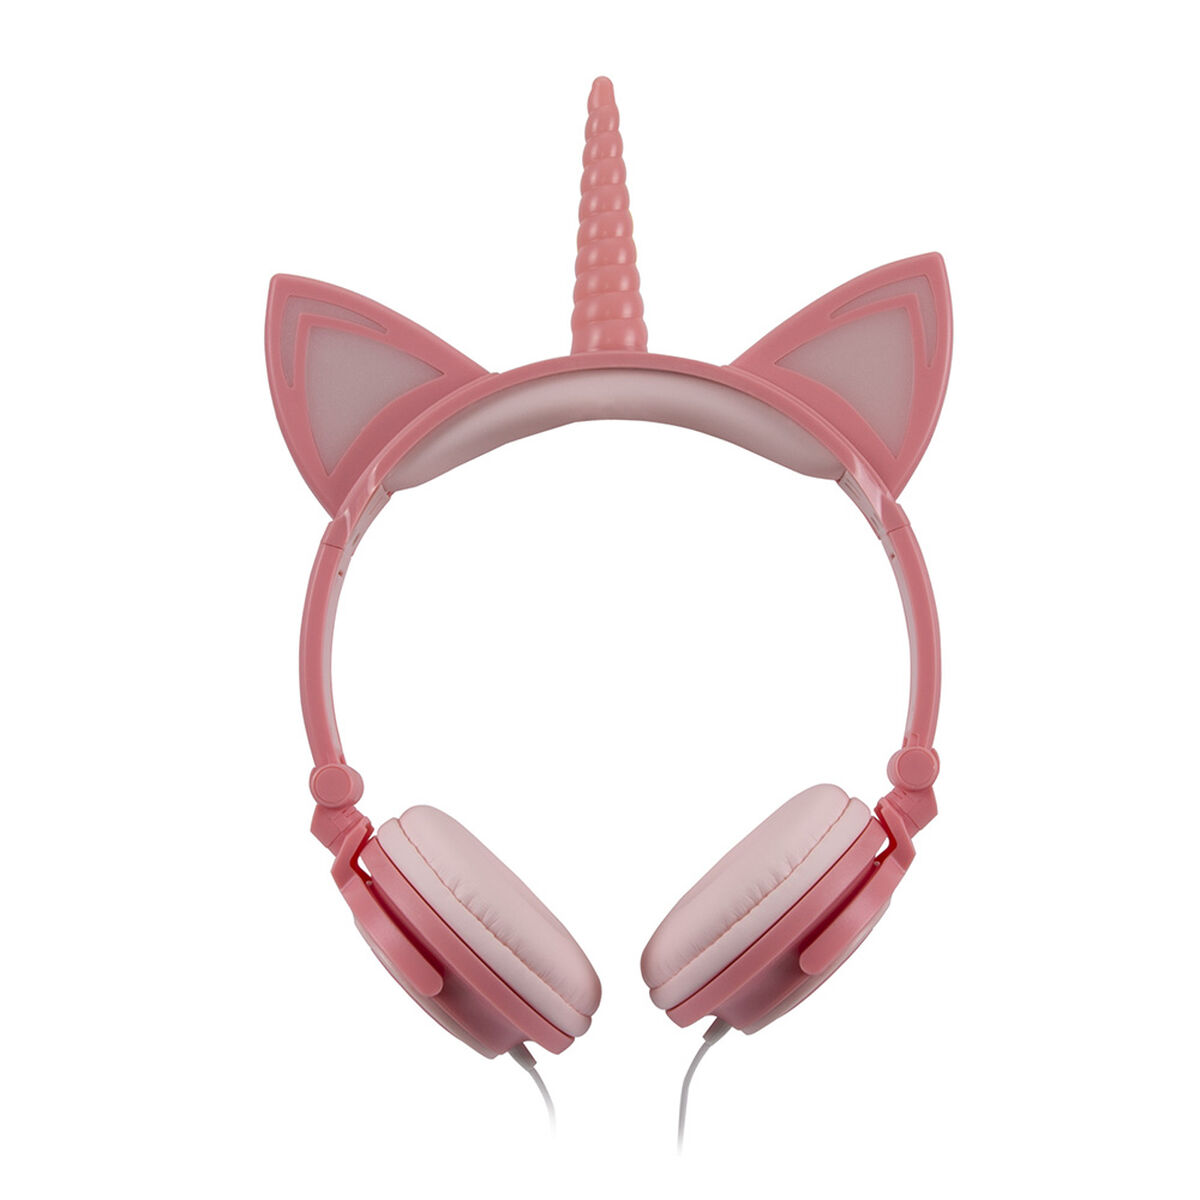 Audífonos Over Ear Prosound Unicornio Rosados